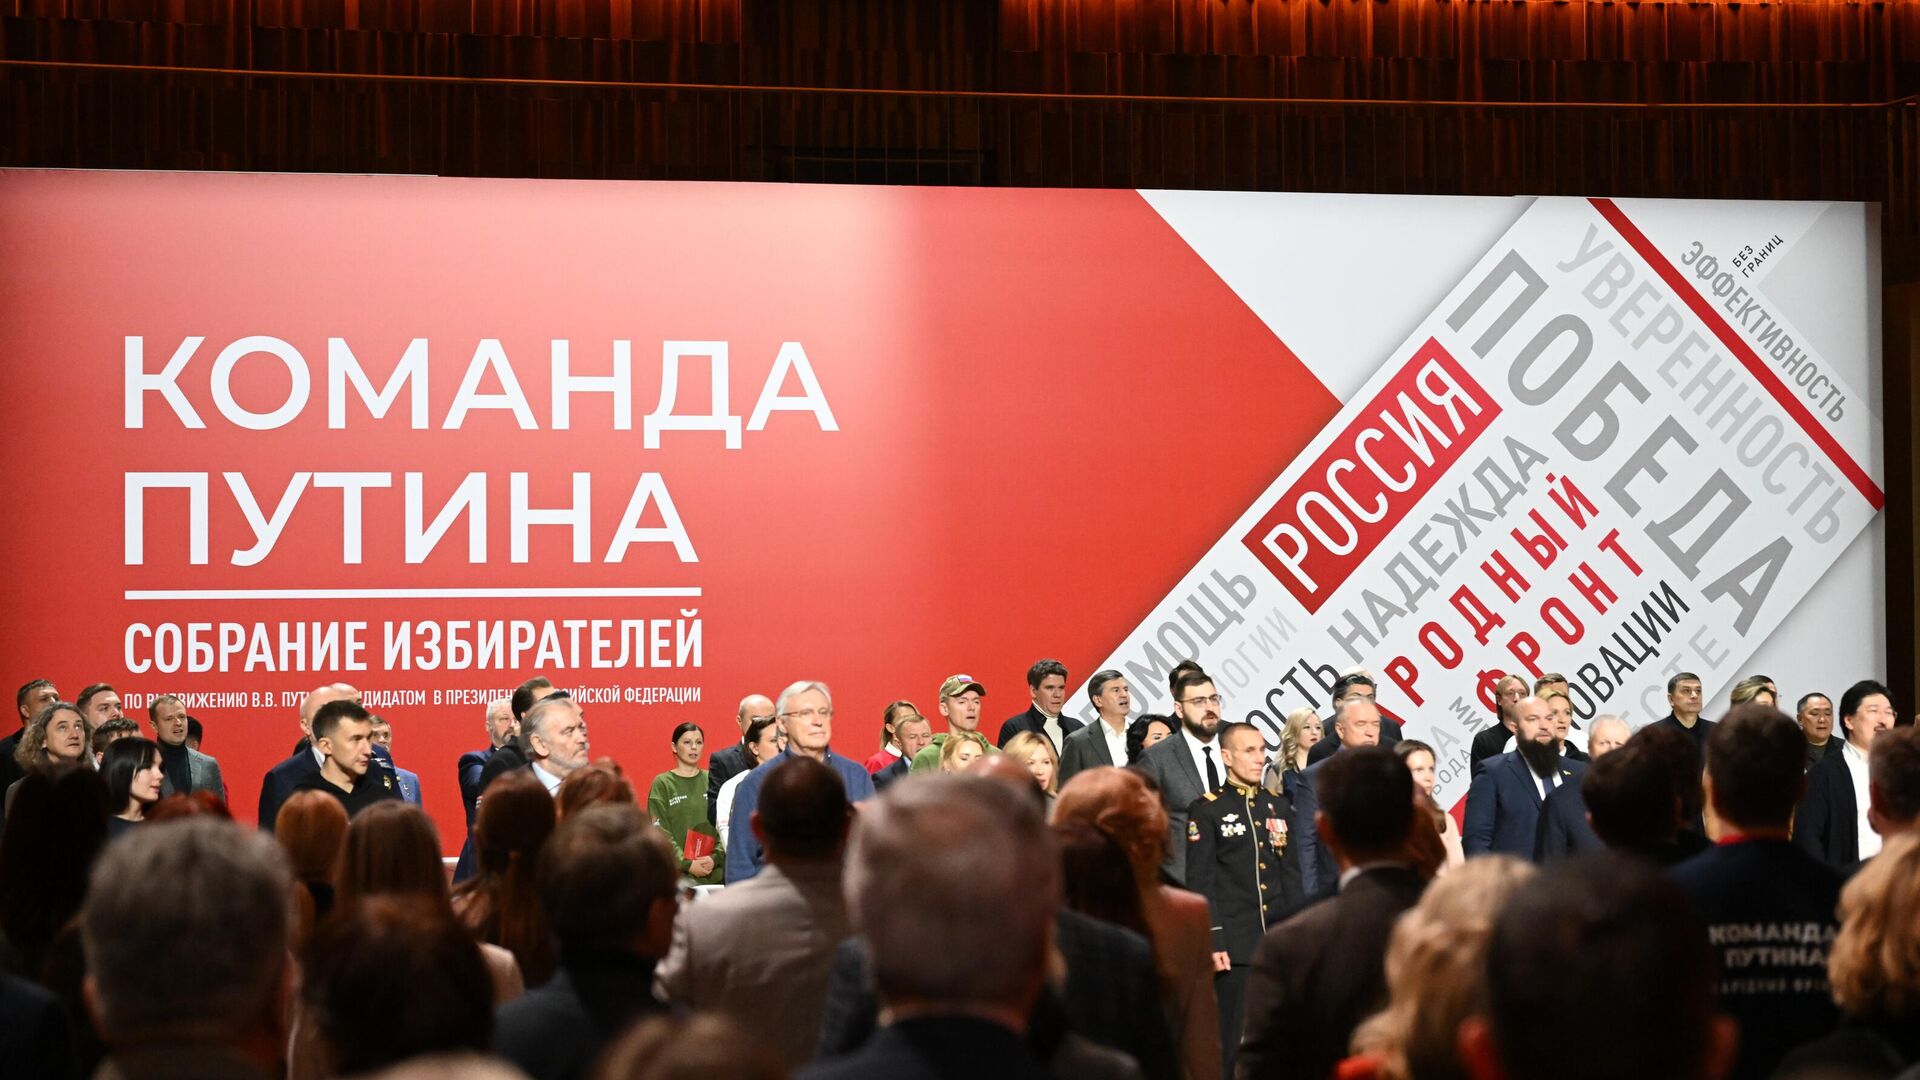 Собрание инициативной группы избирателей единогласно поддержало самовыдвижение Владимира Путина на выборах Президента Российской Федерации